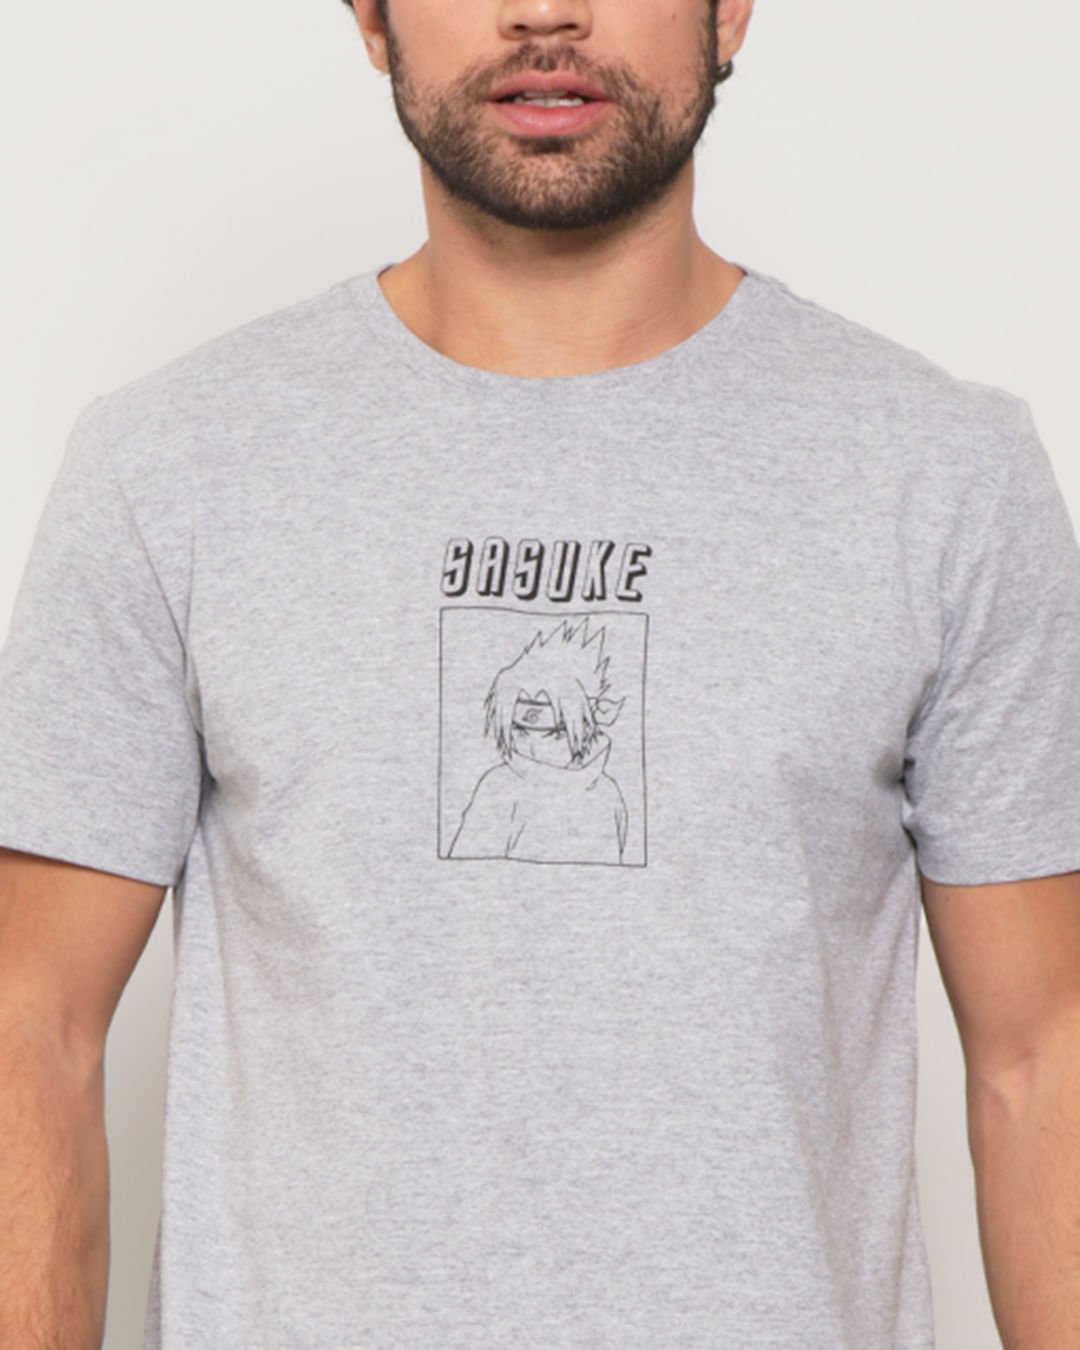 Camiseta-Masculina-Sasuke-Naruto-Mescla